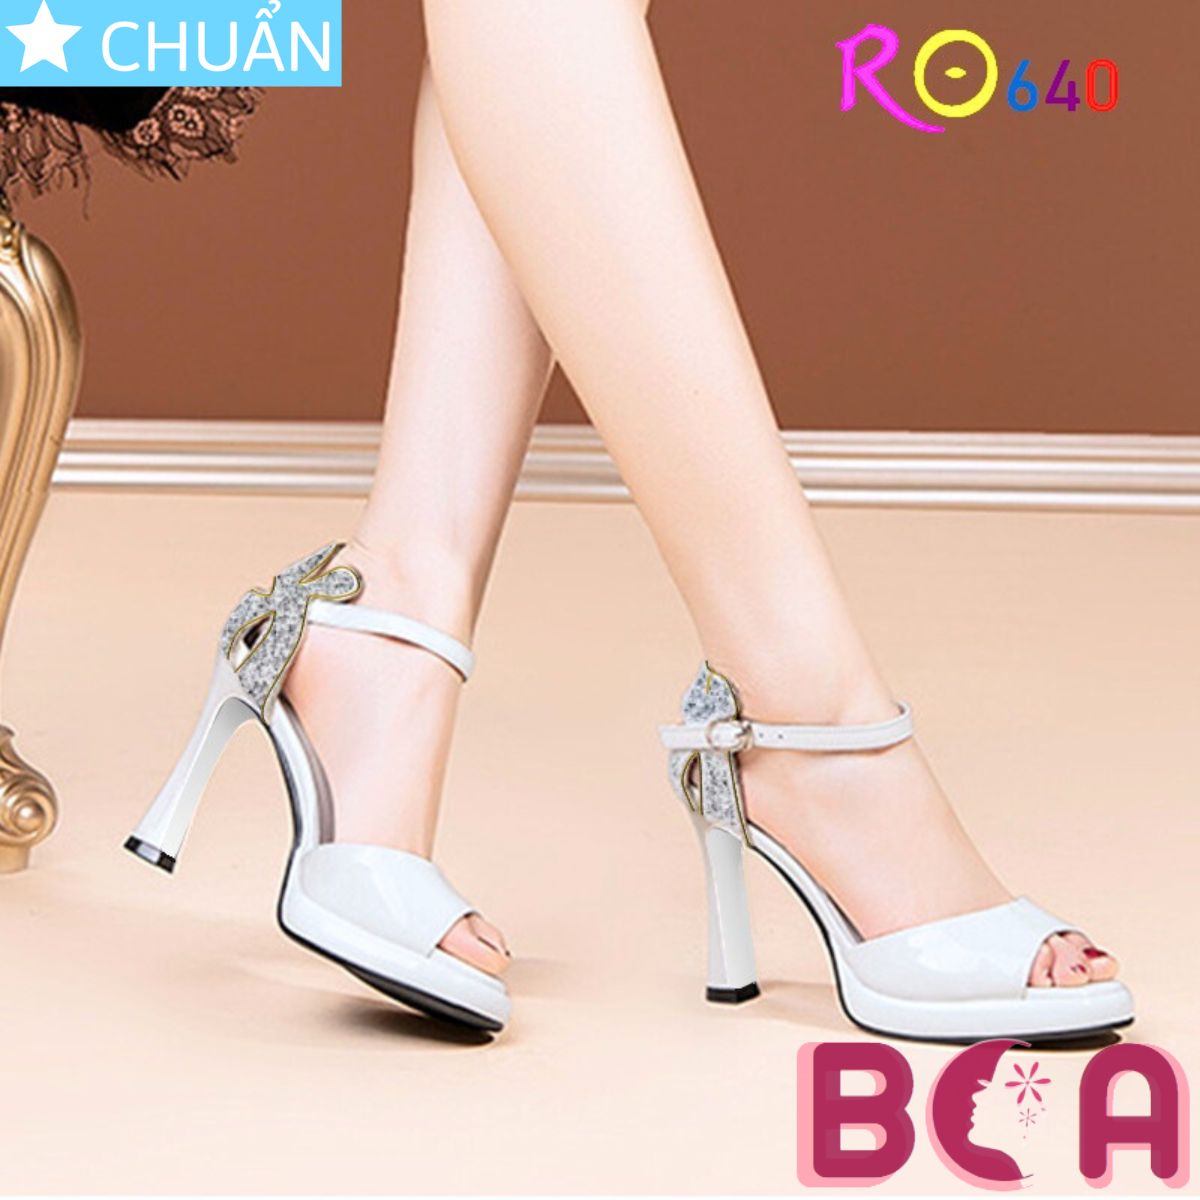 Giày nữ đi tiệc cao gót 8 phần RO640 ROSATA tại BCASHOP phần sau gót được bộc kim tuyến lấp lánh, tôn chân cực kì